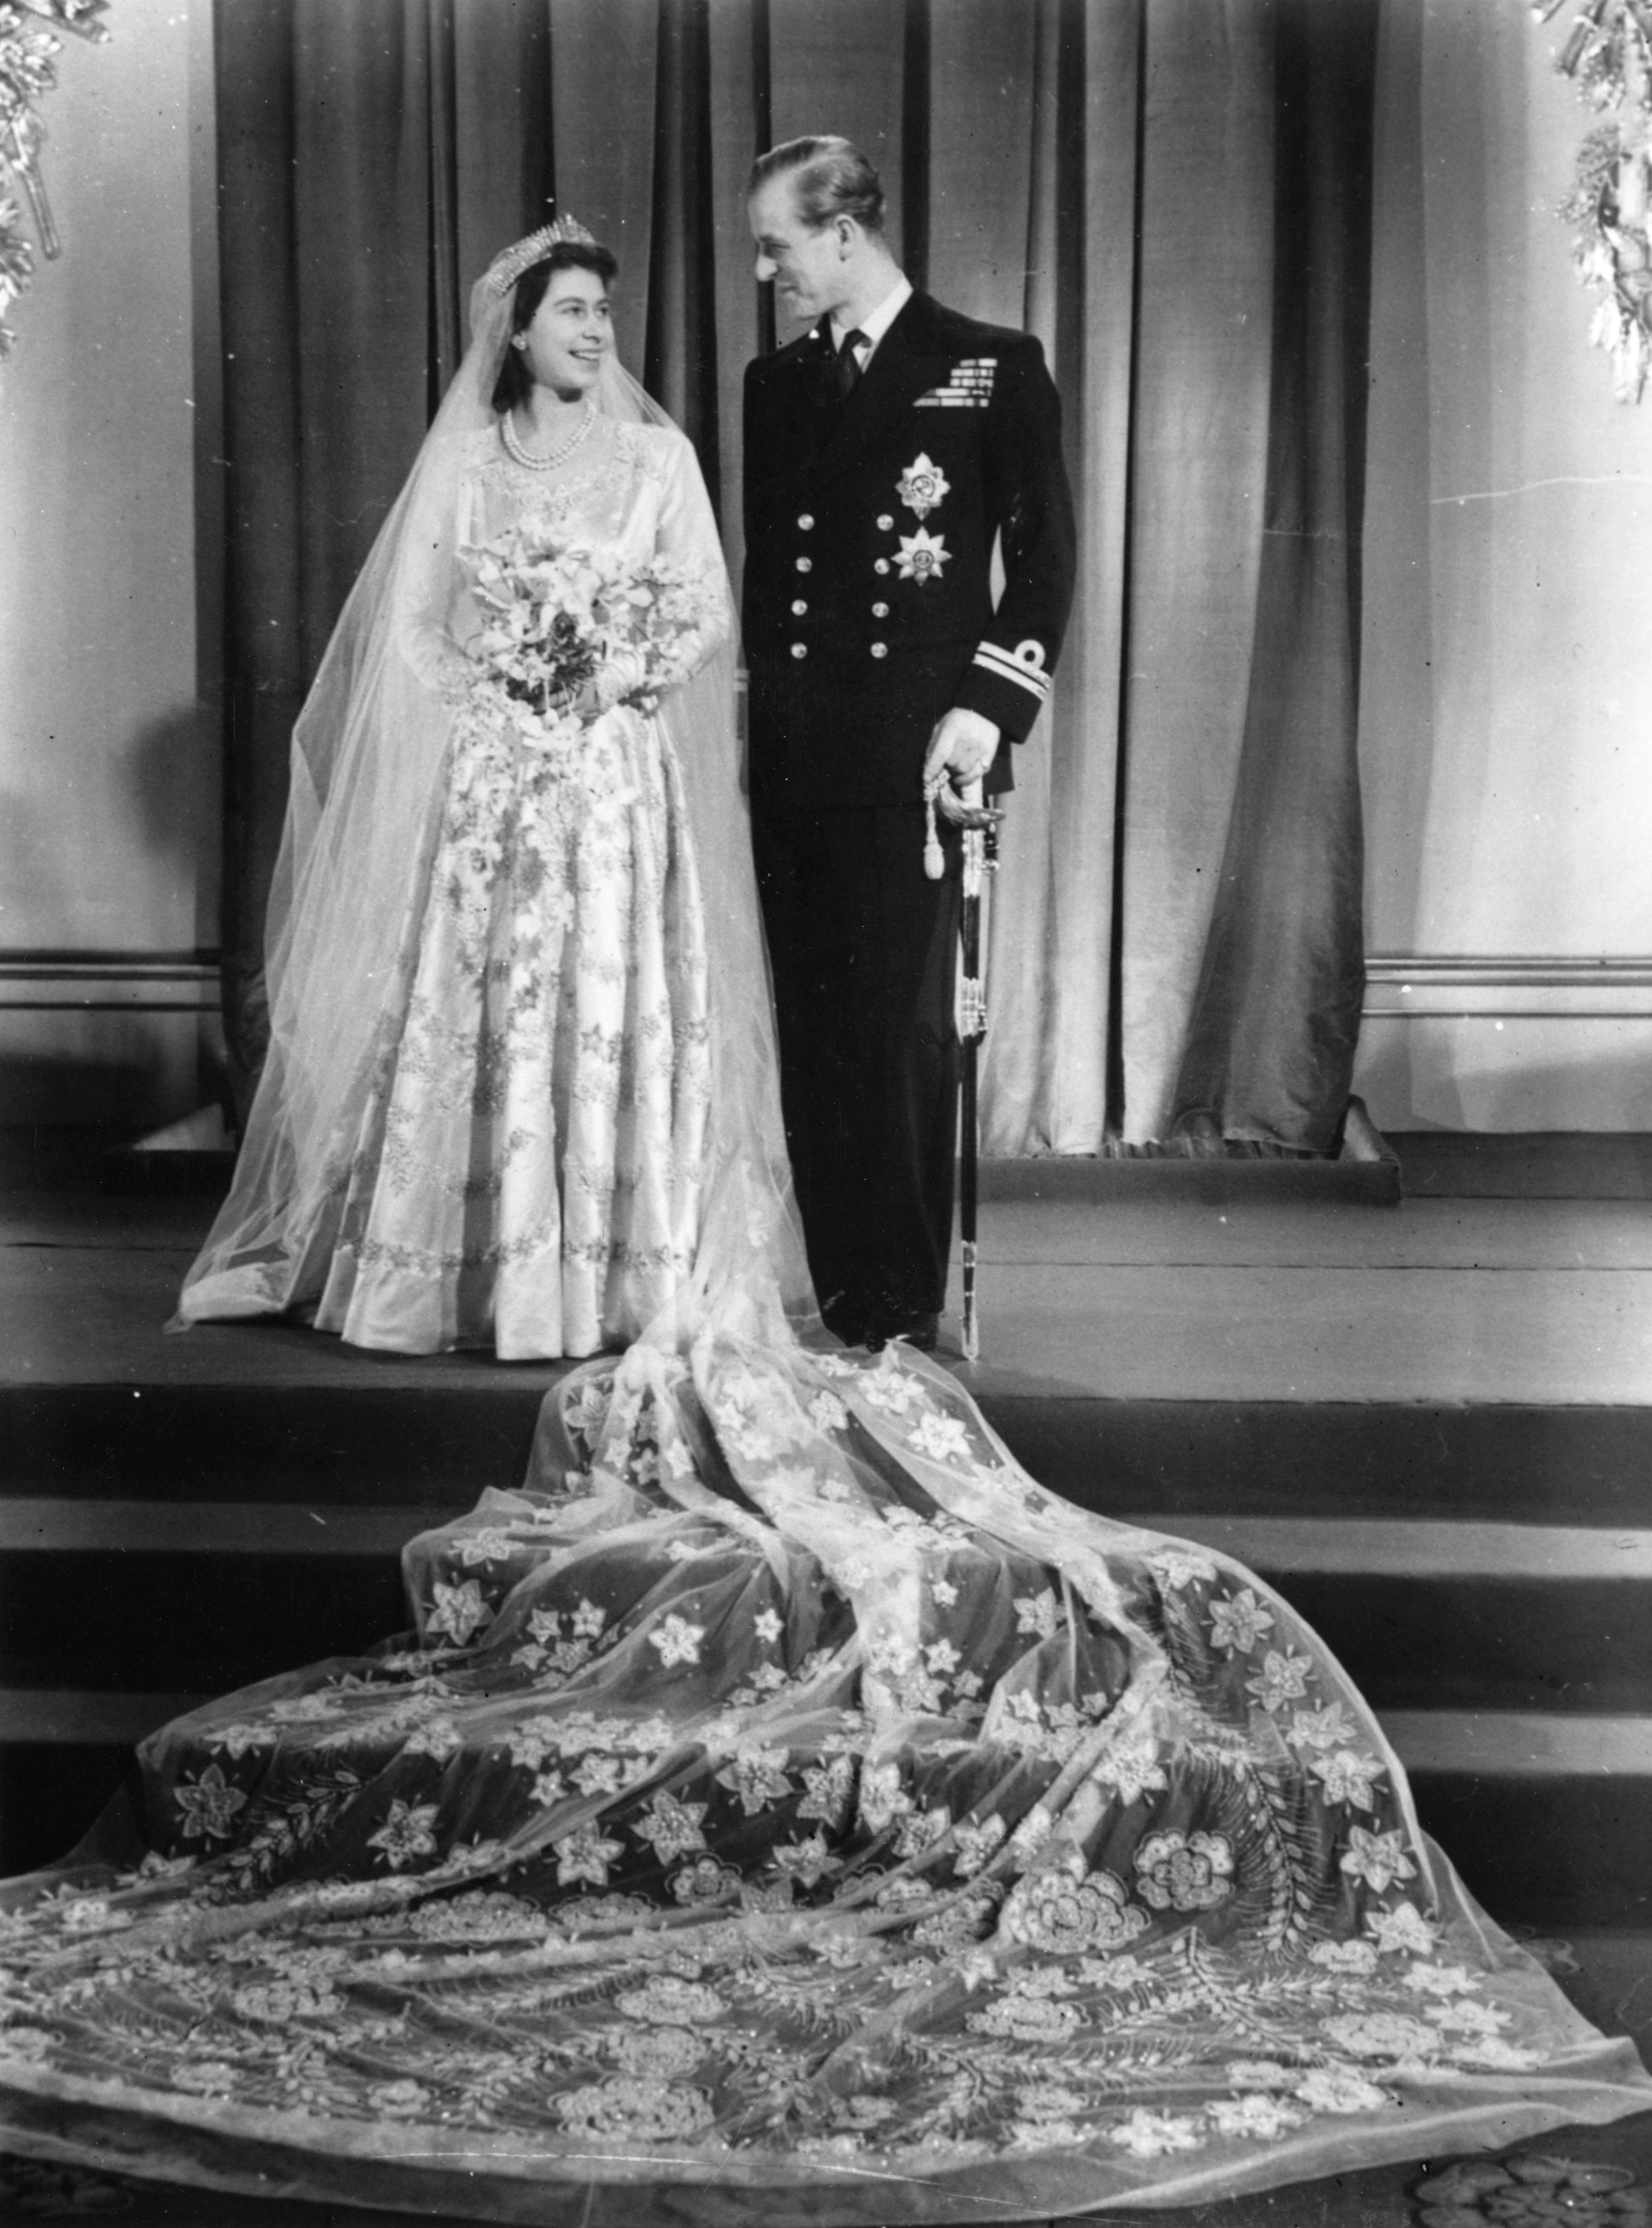 Queen Elizabeth Wedding Dress - The 